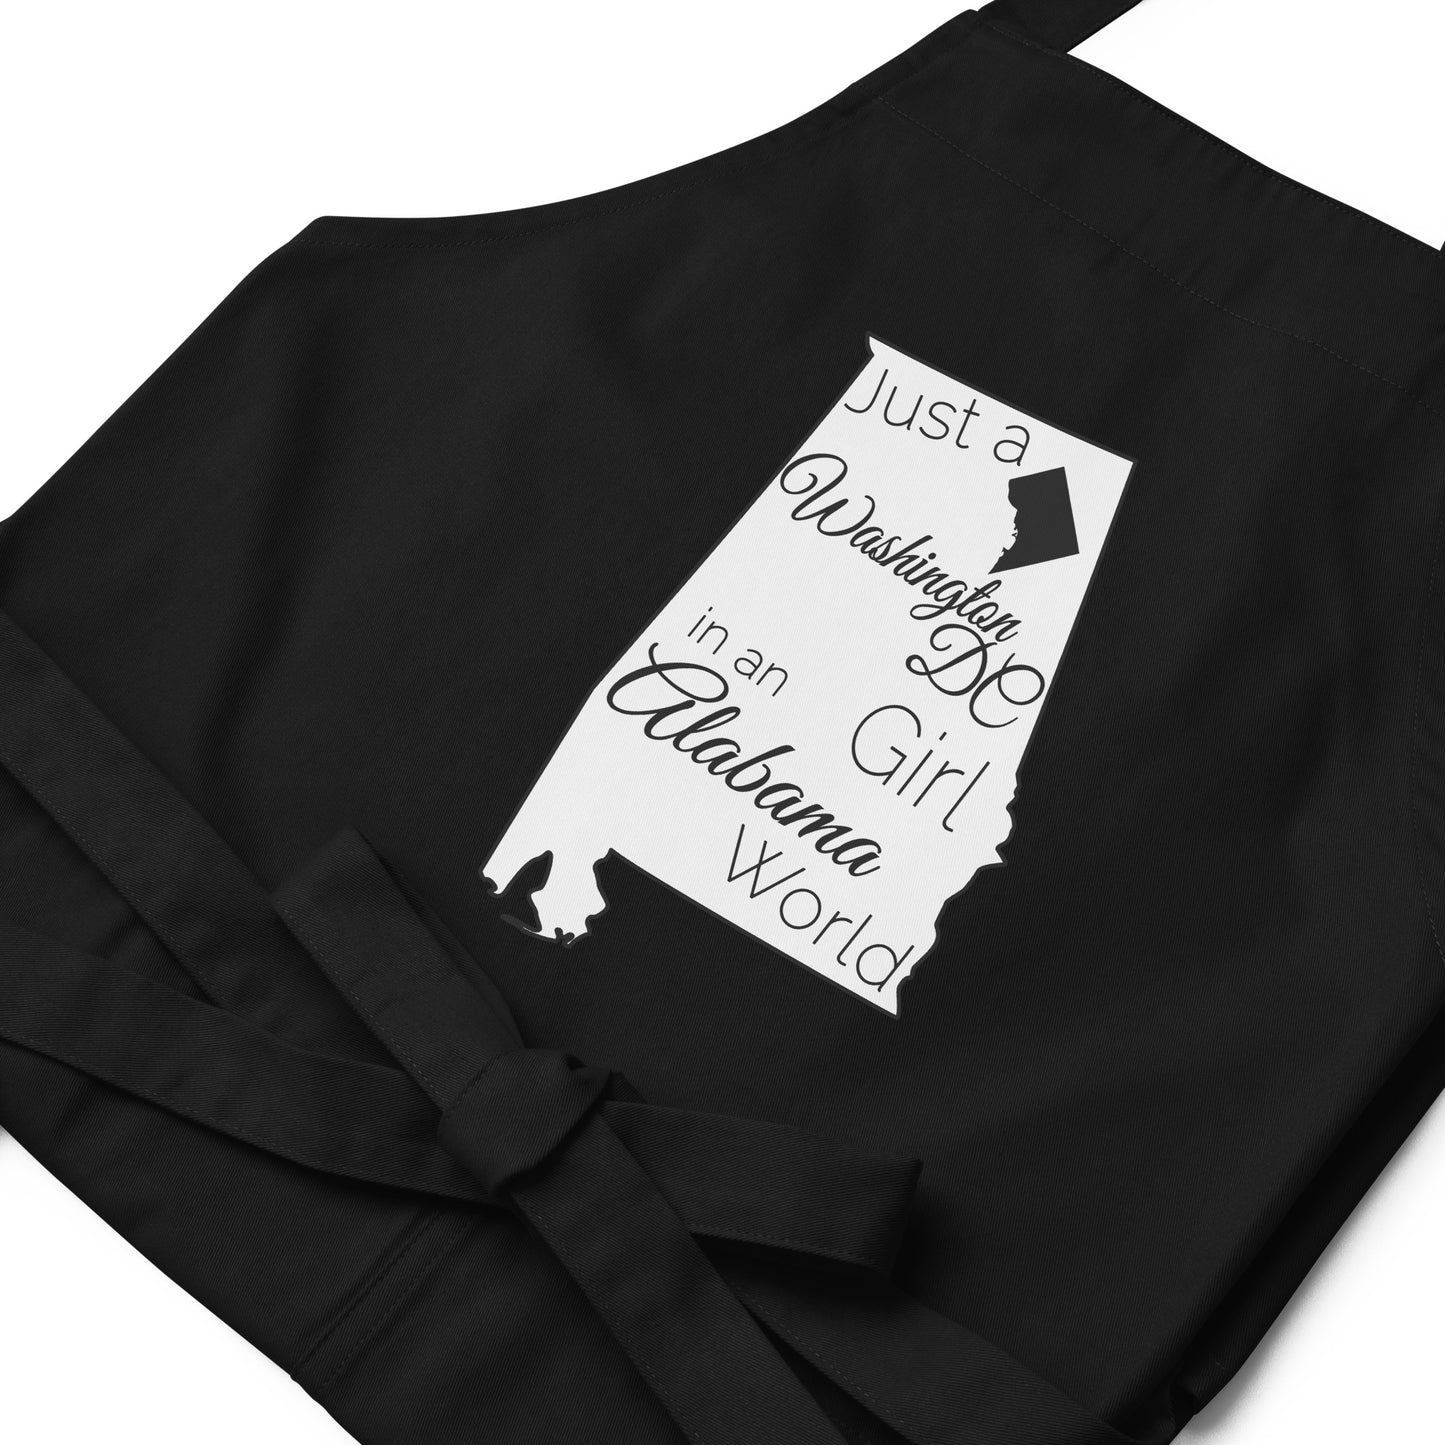 Just a Washington DC Girl in an Alabama World Organic cotton apron